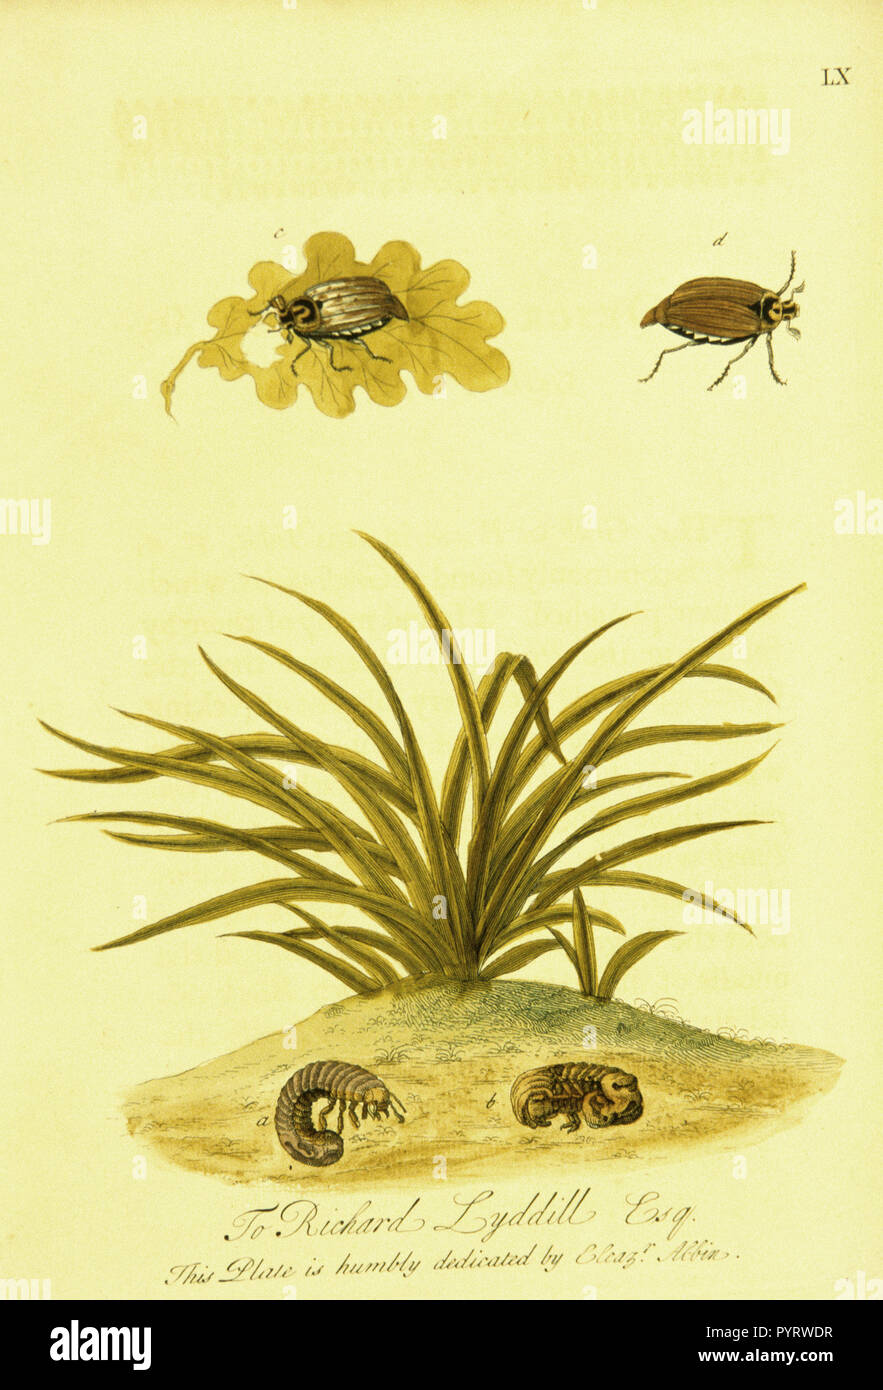 Illustrazione colorata del ciclo di vita di un coleottero marrone, dal worm di Scarabeo Foto Stock